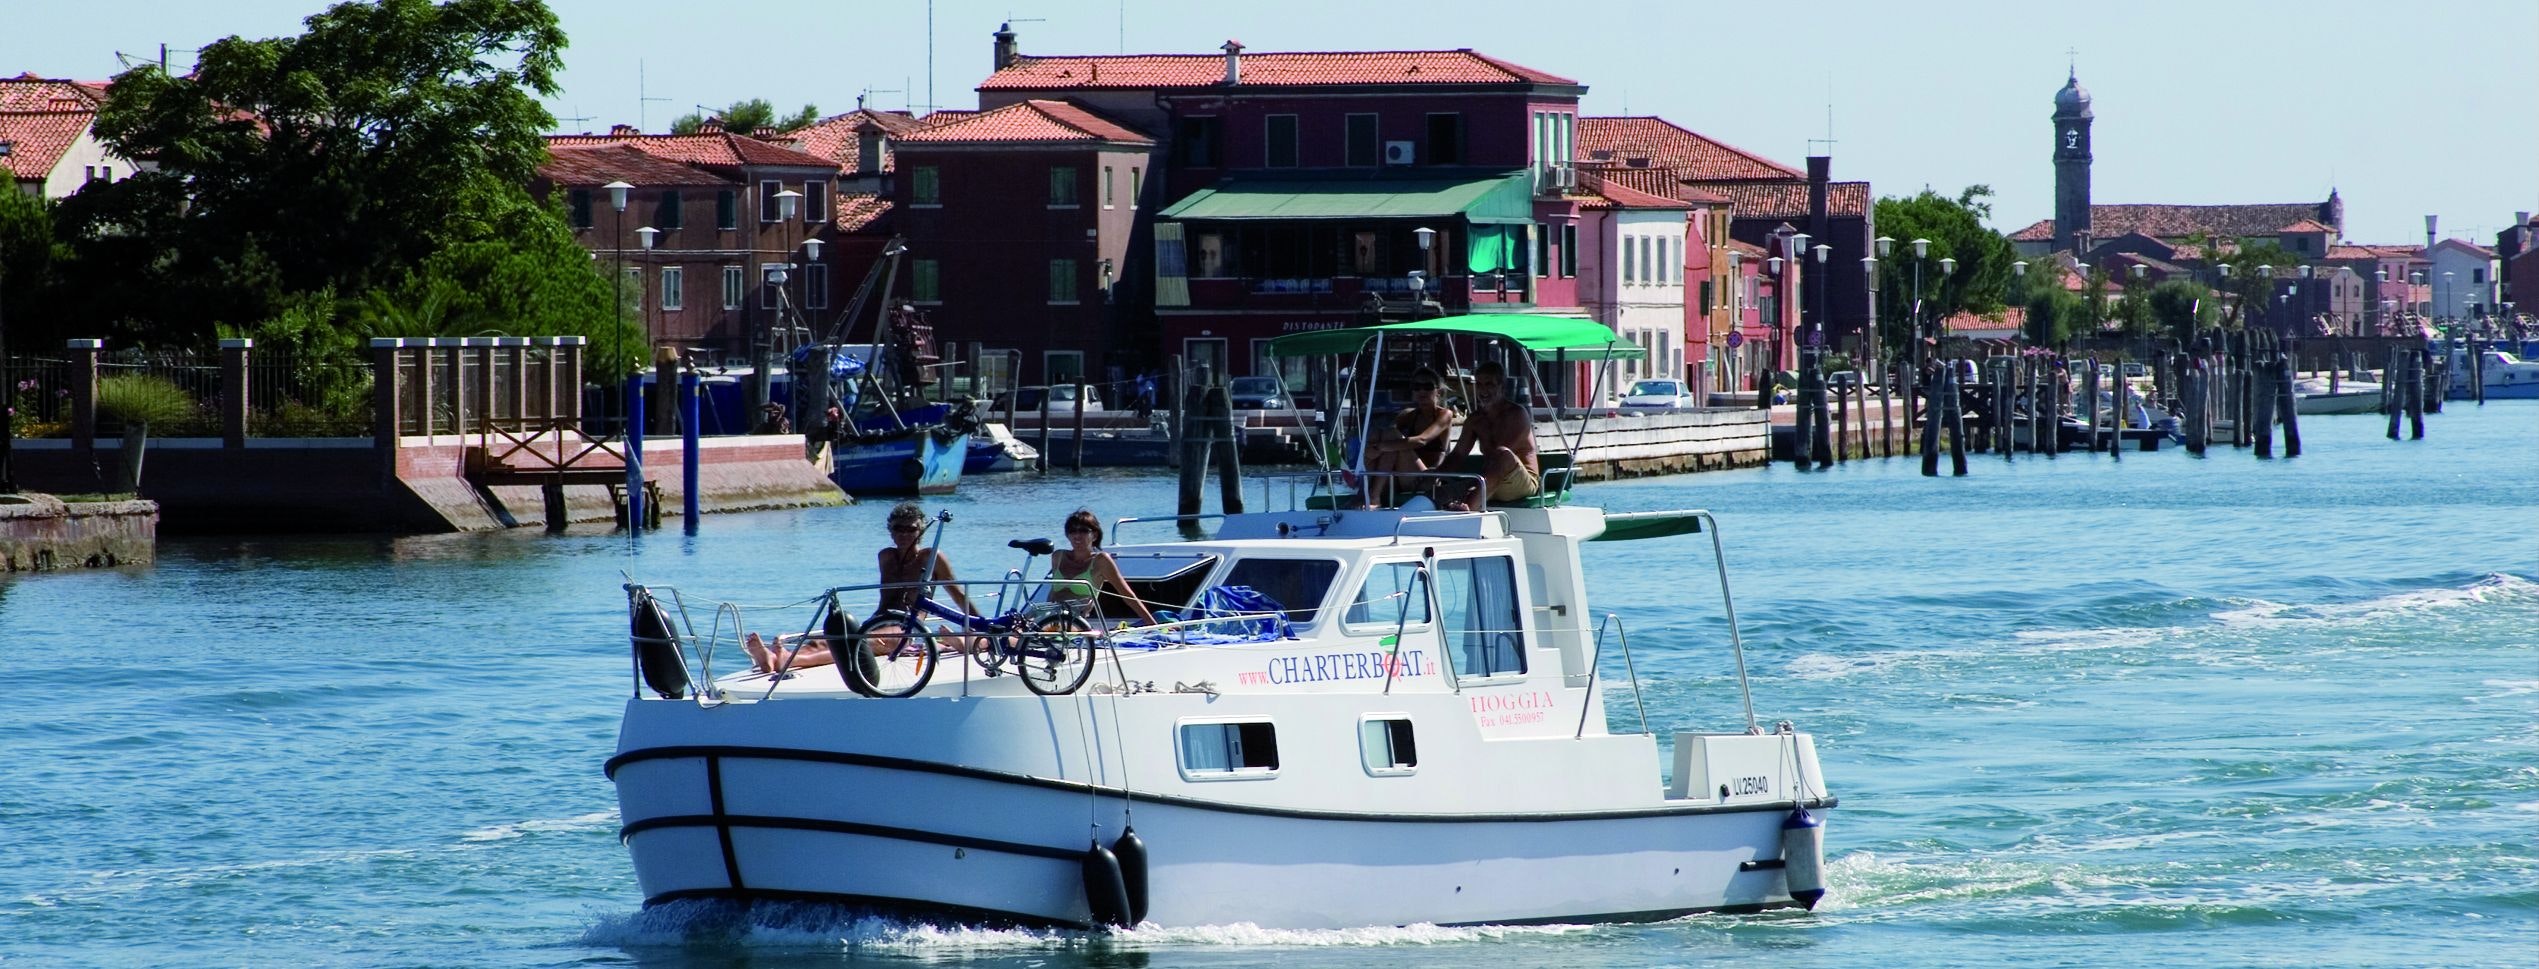 Människor ombord på en husbåt i den venetianska lagunen